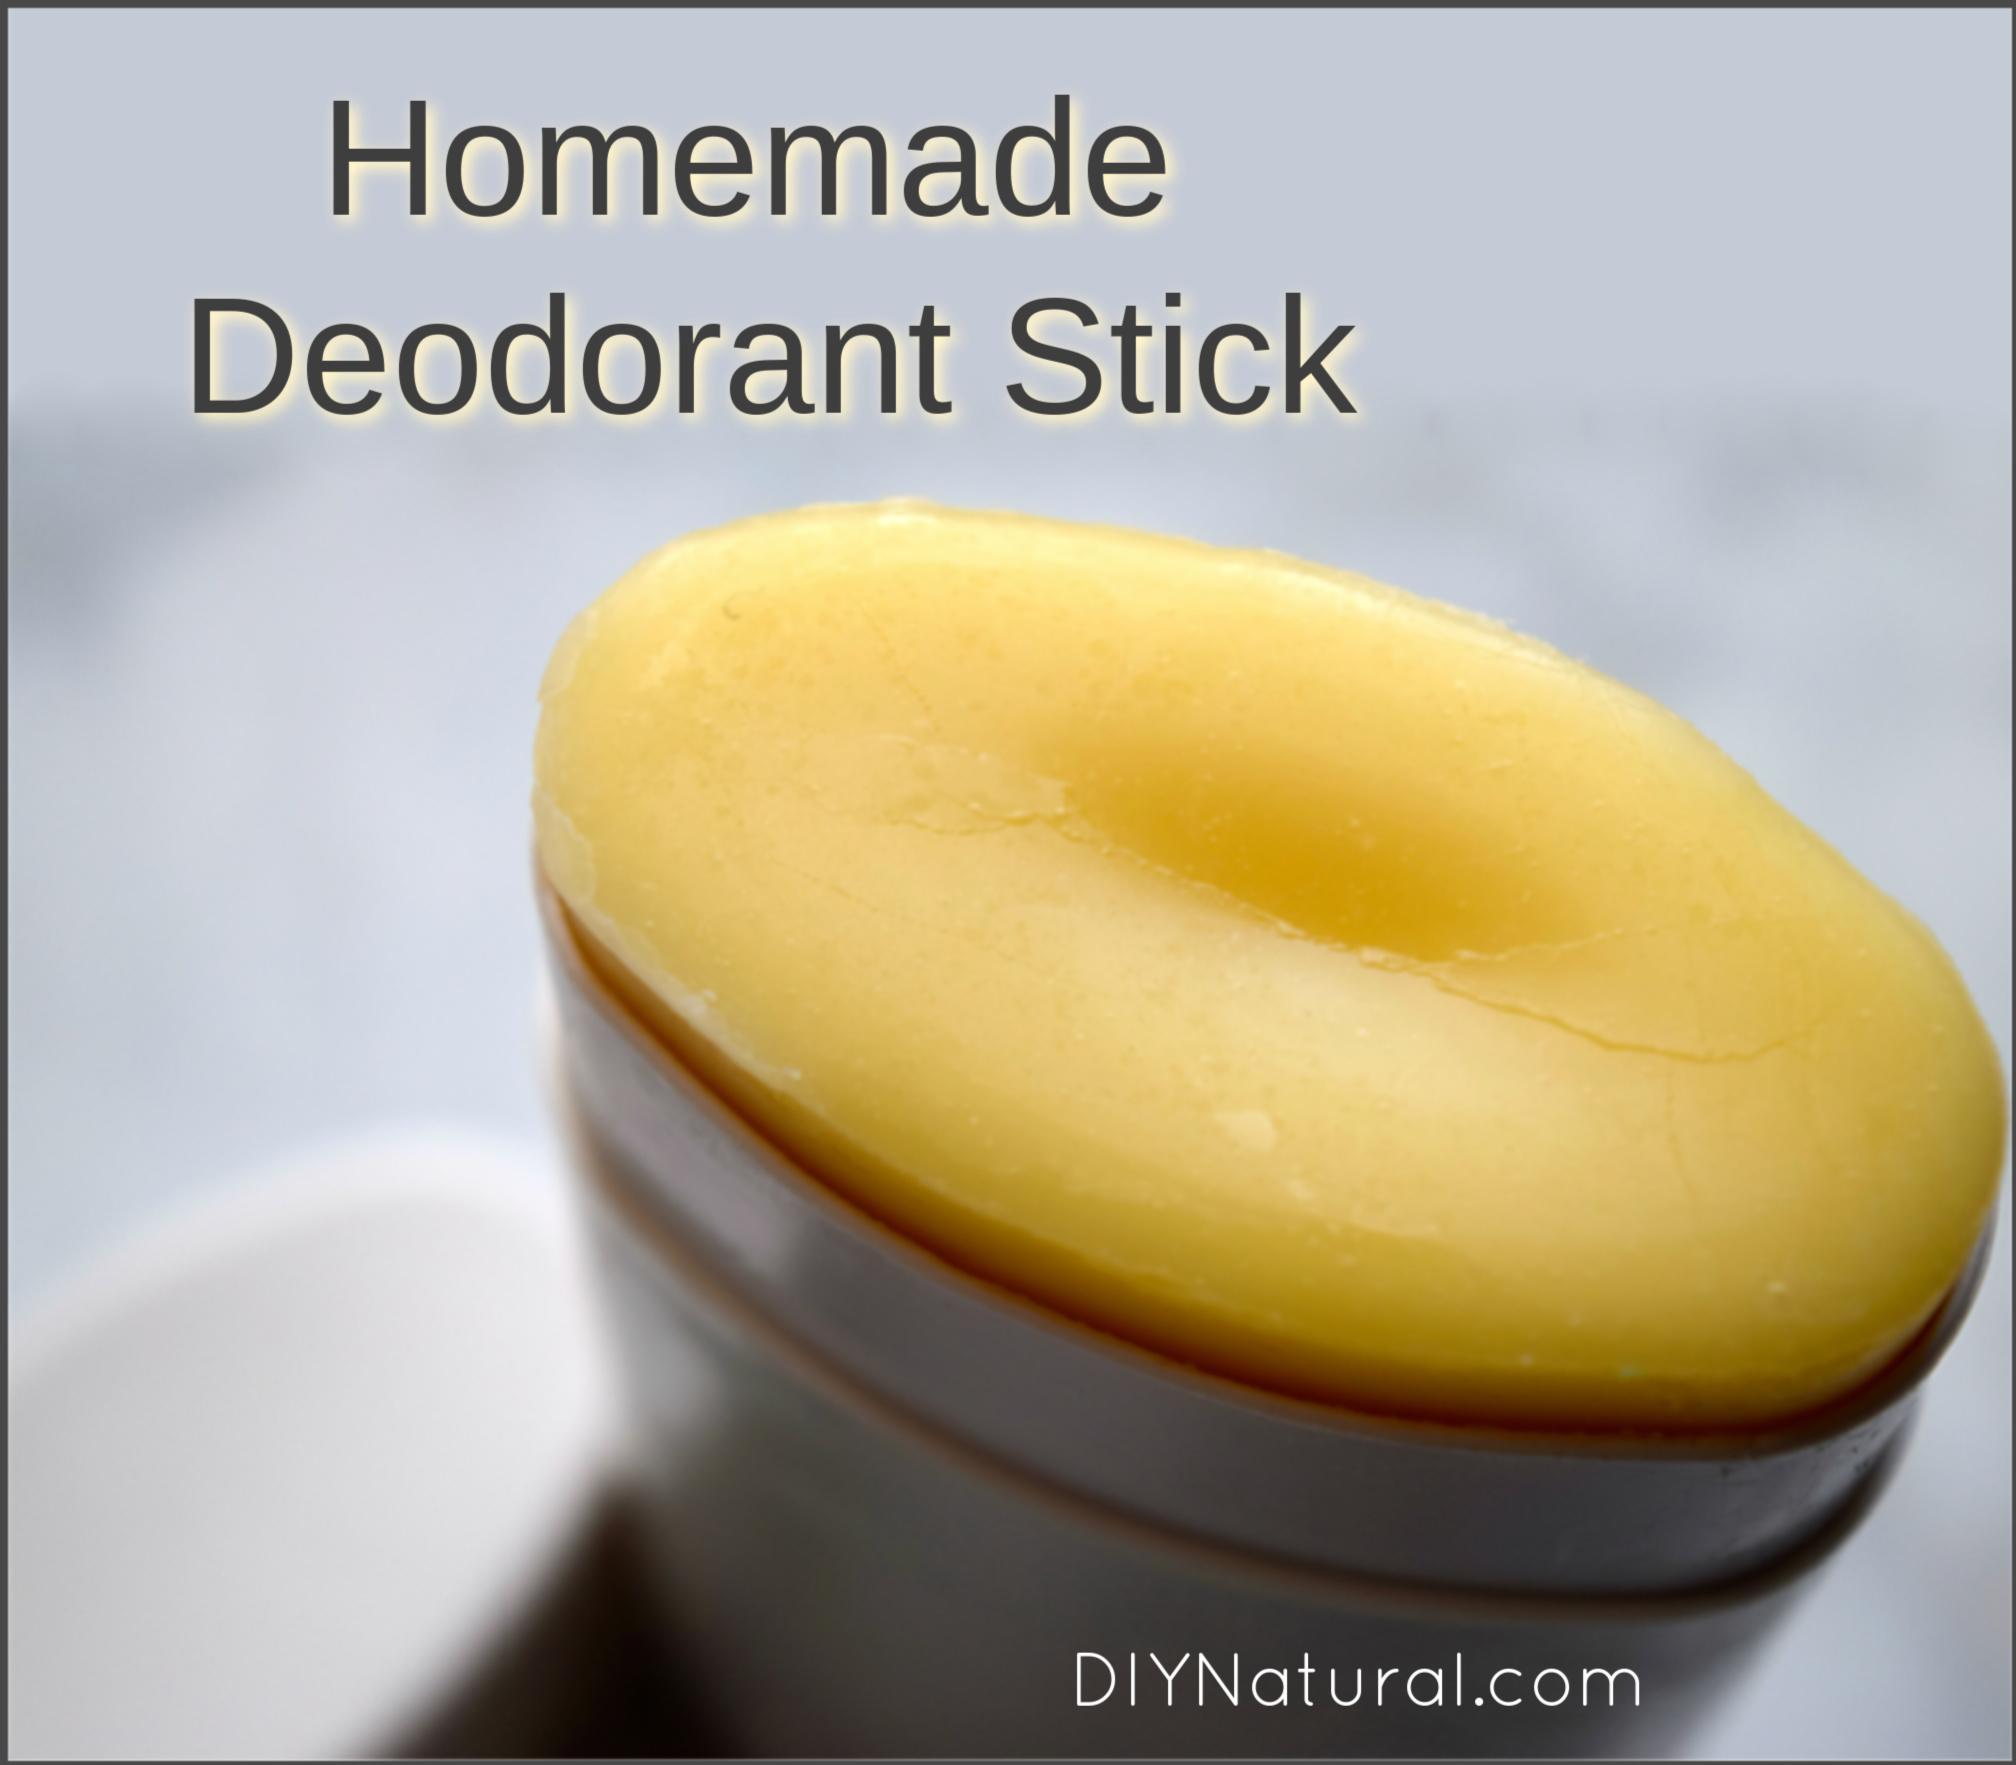 Homemade Deodorant Stick: A Natural